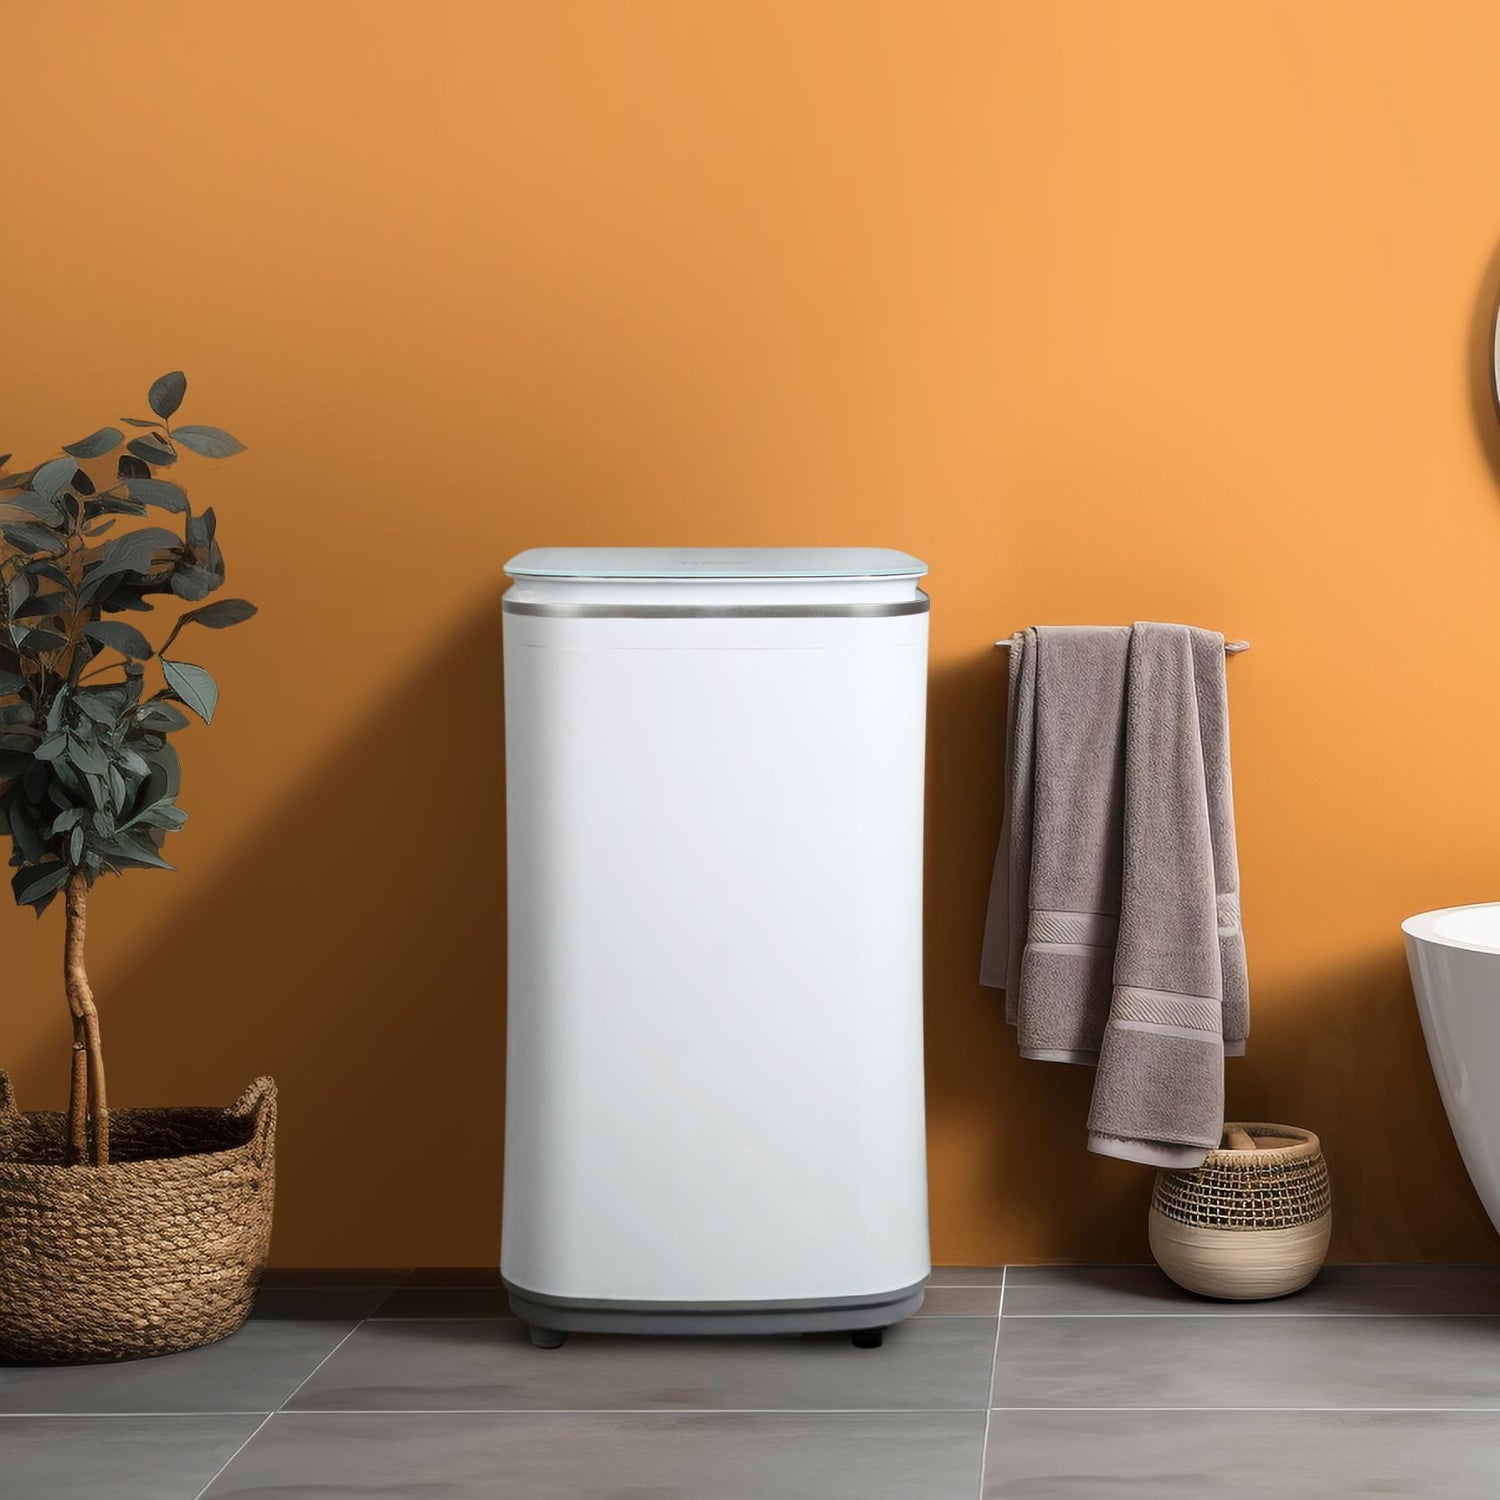 Go-clean's HAVA liten tvättmaskin i ett modernt badrum med orange väggar, placerad bredvid en korg med en levande växt och handdukar, vilket visar hur väl den smälter in i hemmiljöer